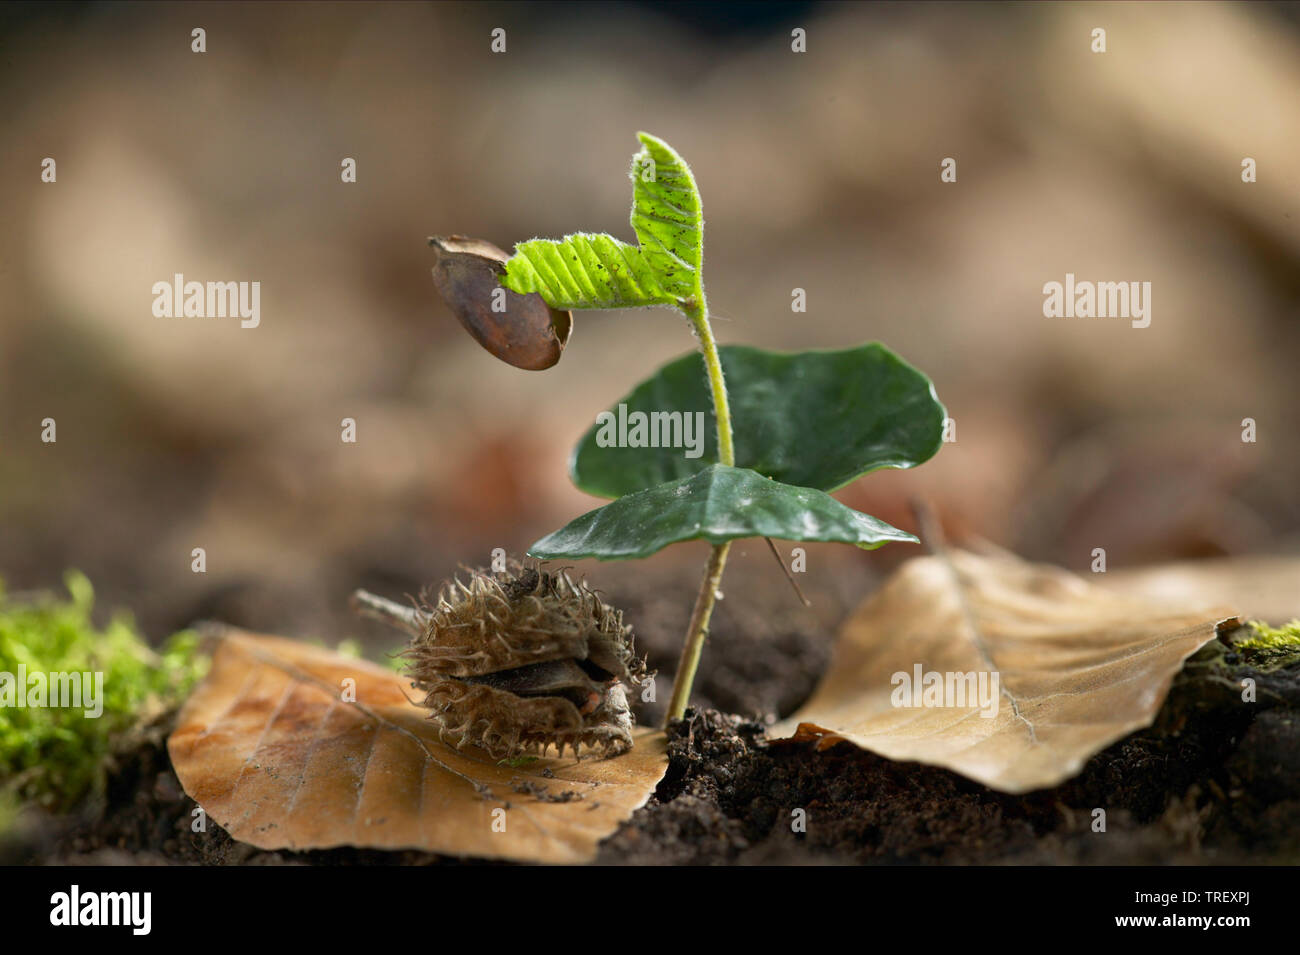 Hêtre européen, le hêtre commun (Fagus sylvatica), la propagation des semis les cotylédons. Allemagne Banque D'Images